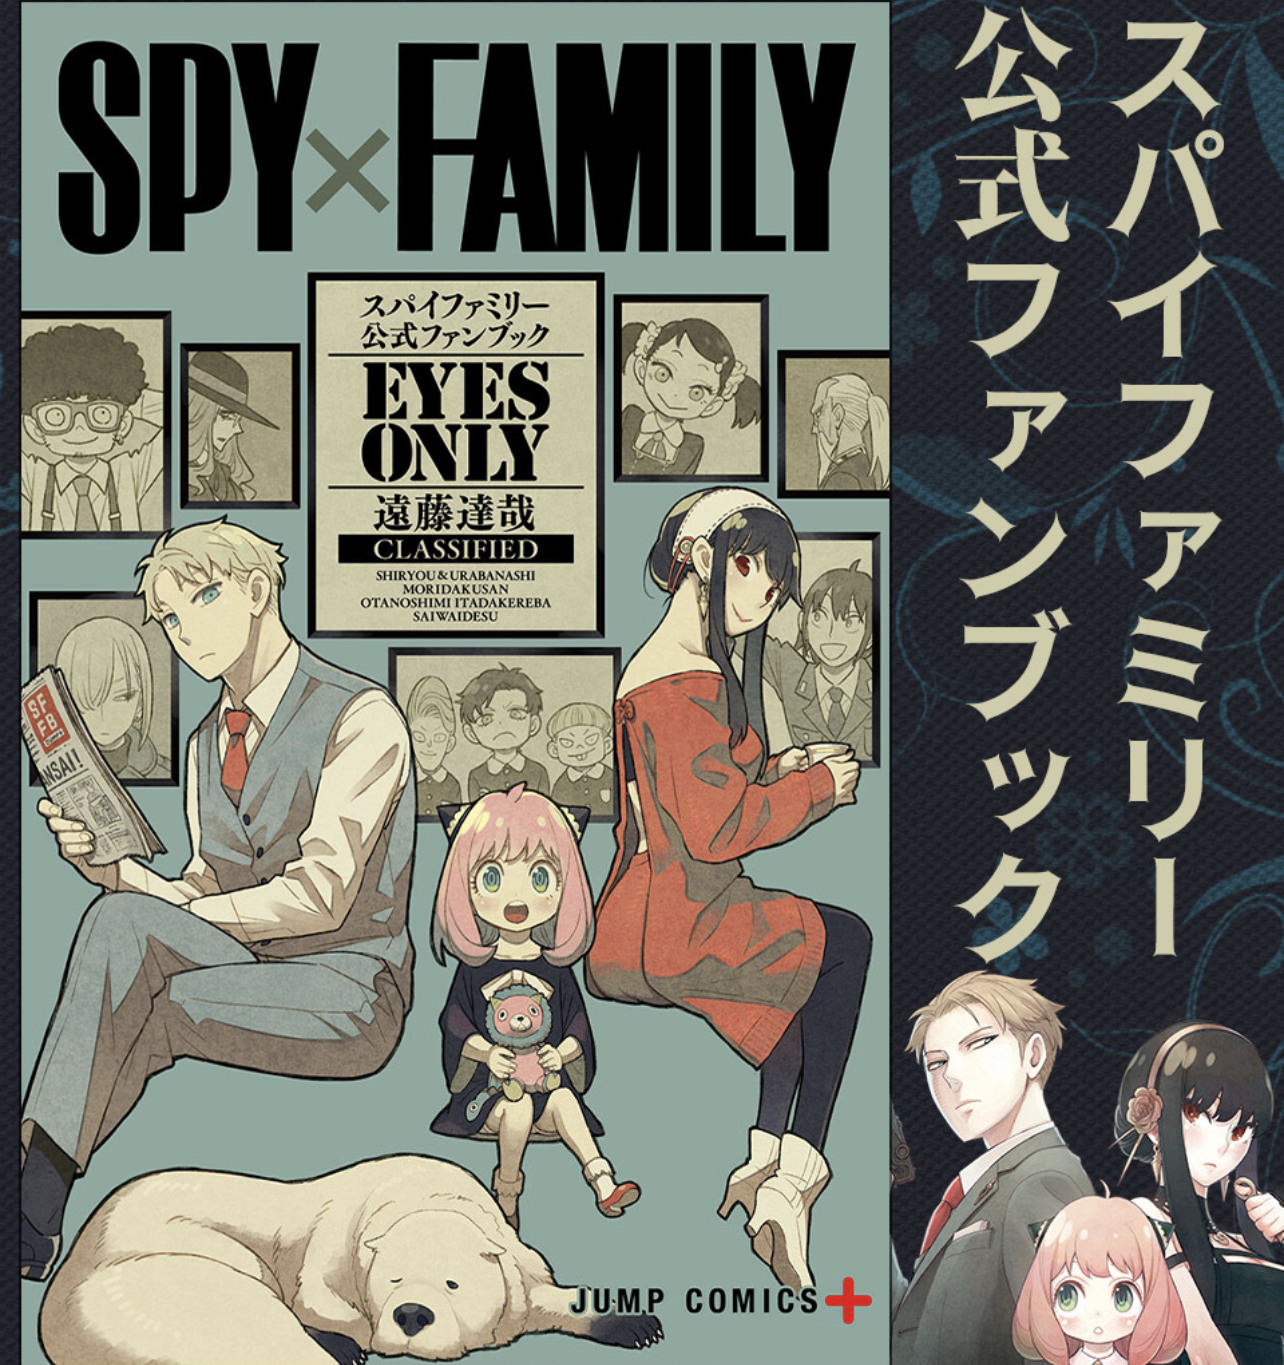 SPY×FAMILY (スパイファミリー) 公式ファンブック 5月2日発売!